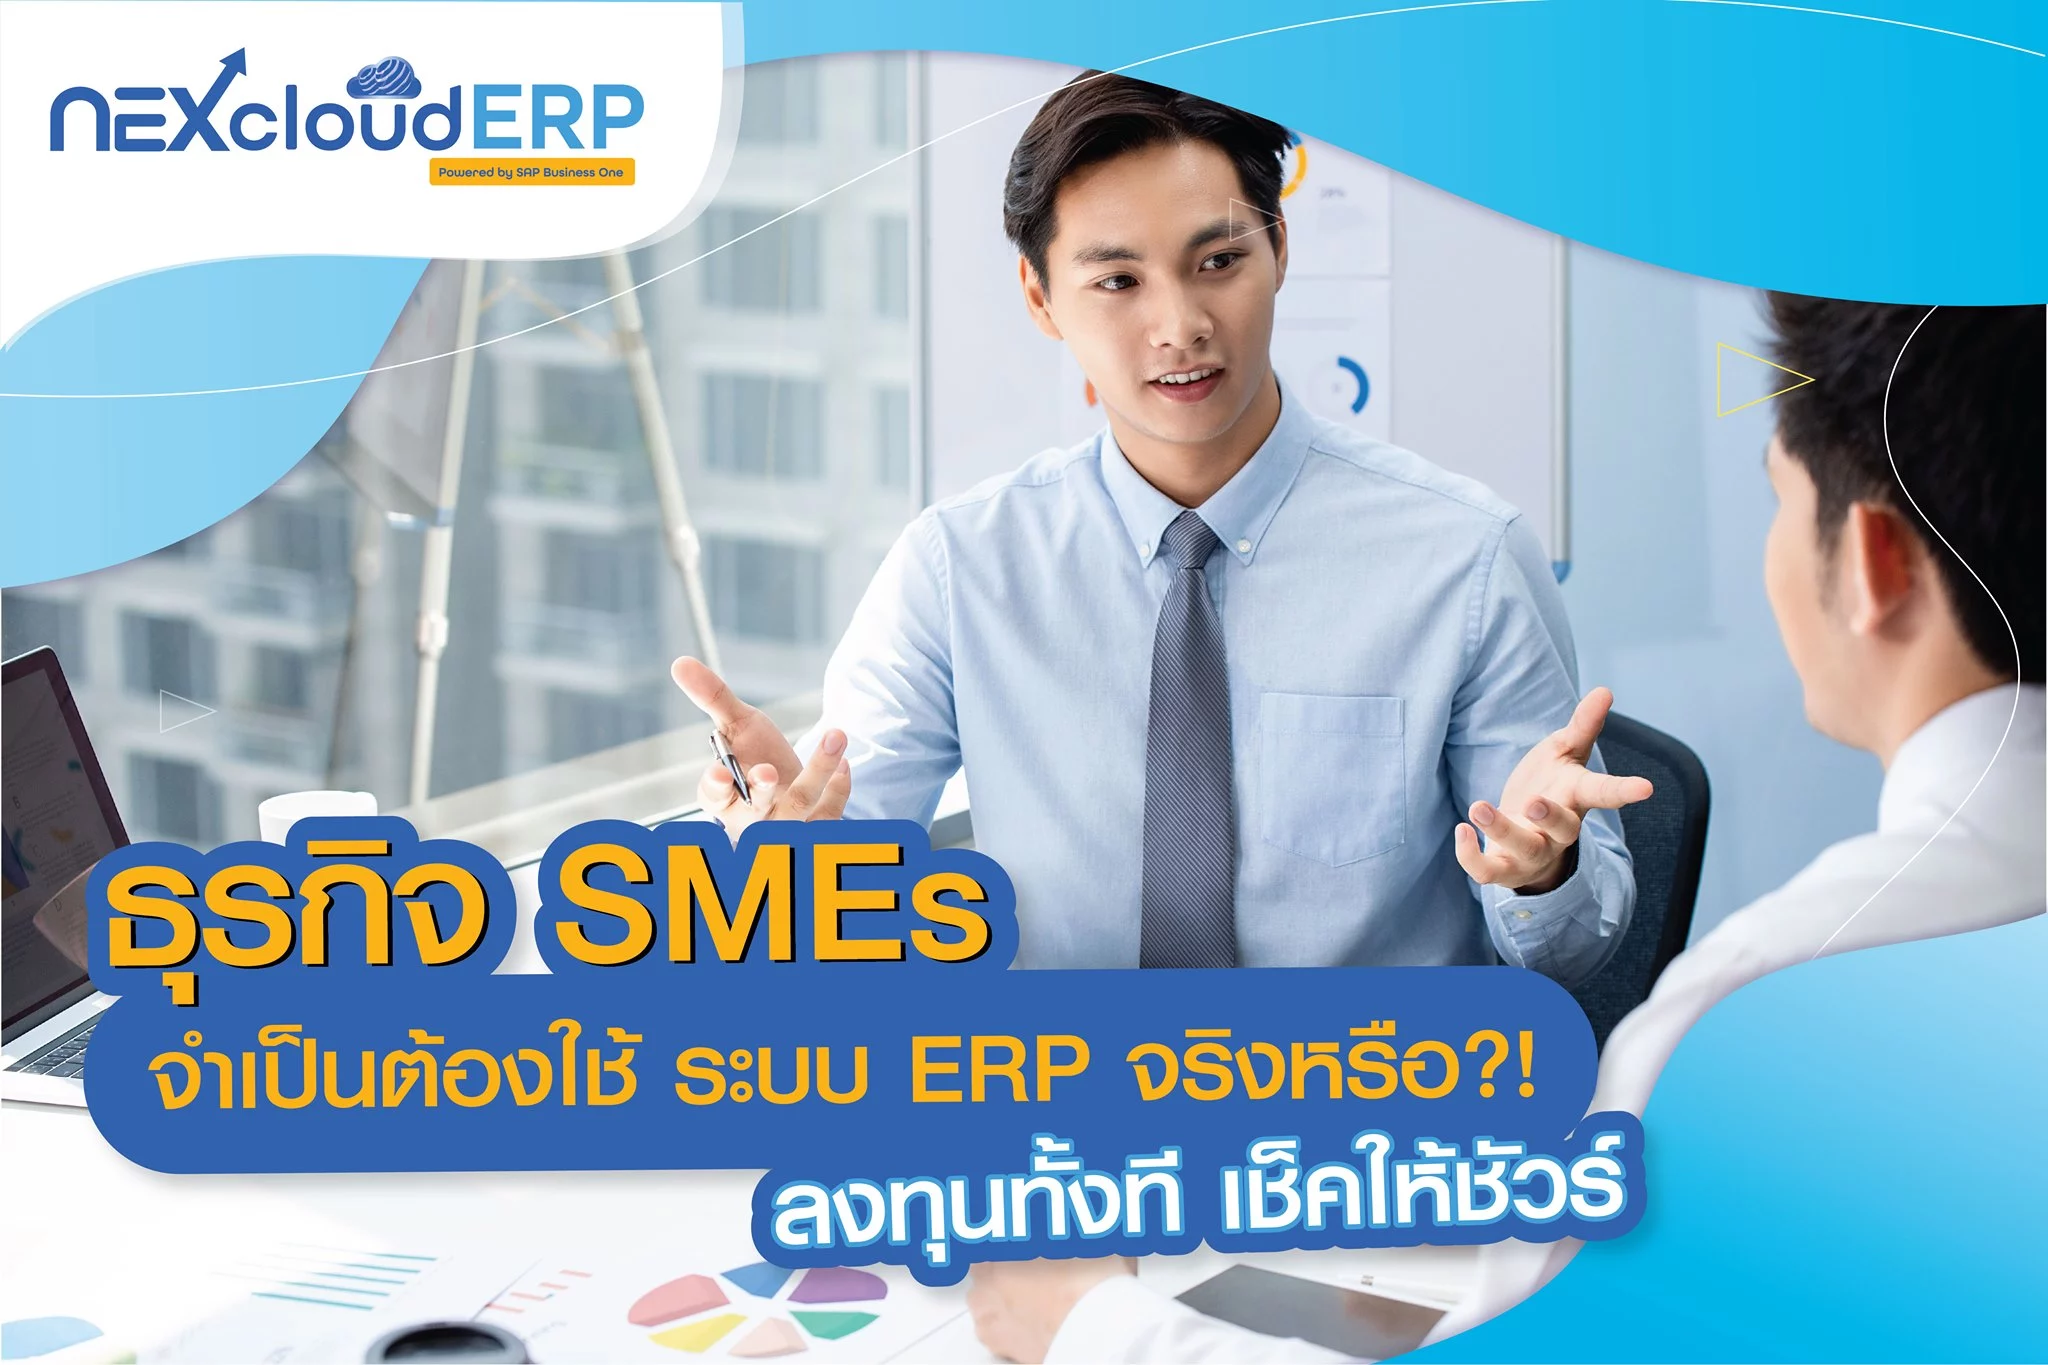 5 เหตุผลที่บอกว่า ธุรกิจ SMEs จำเป็นต้องใช้ระบบ ERP หรือไม่